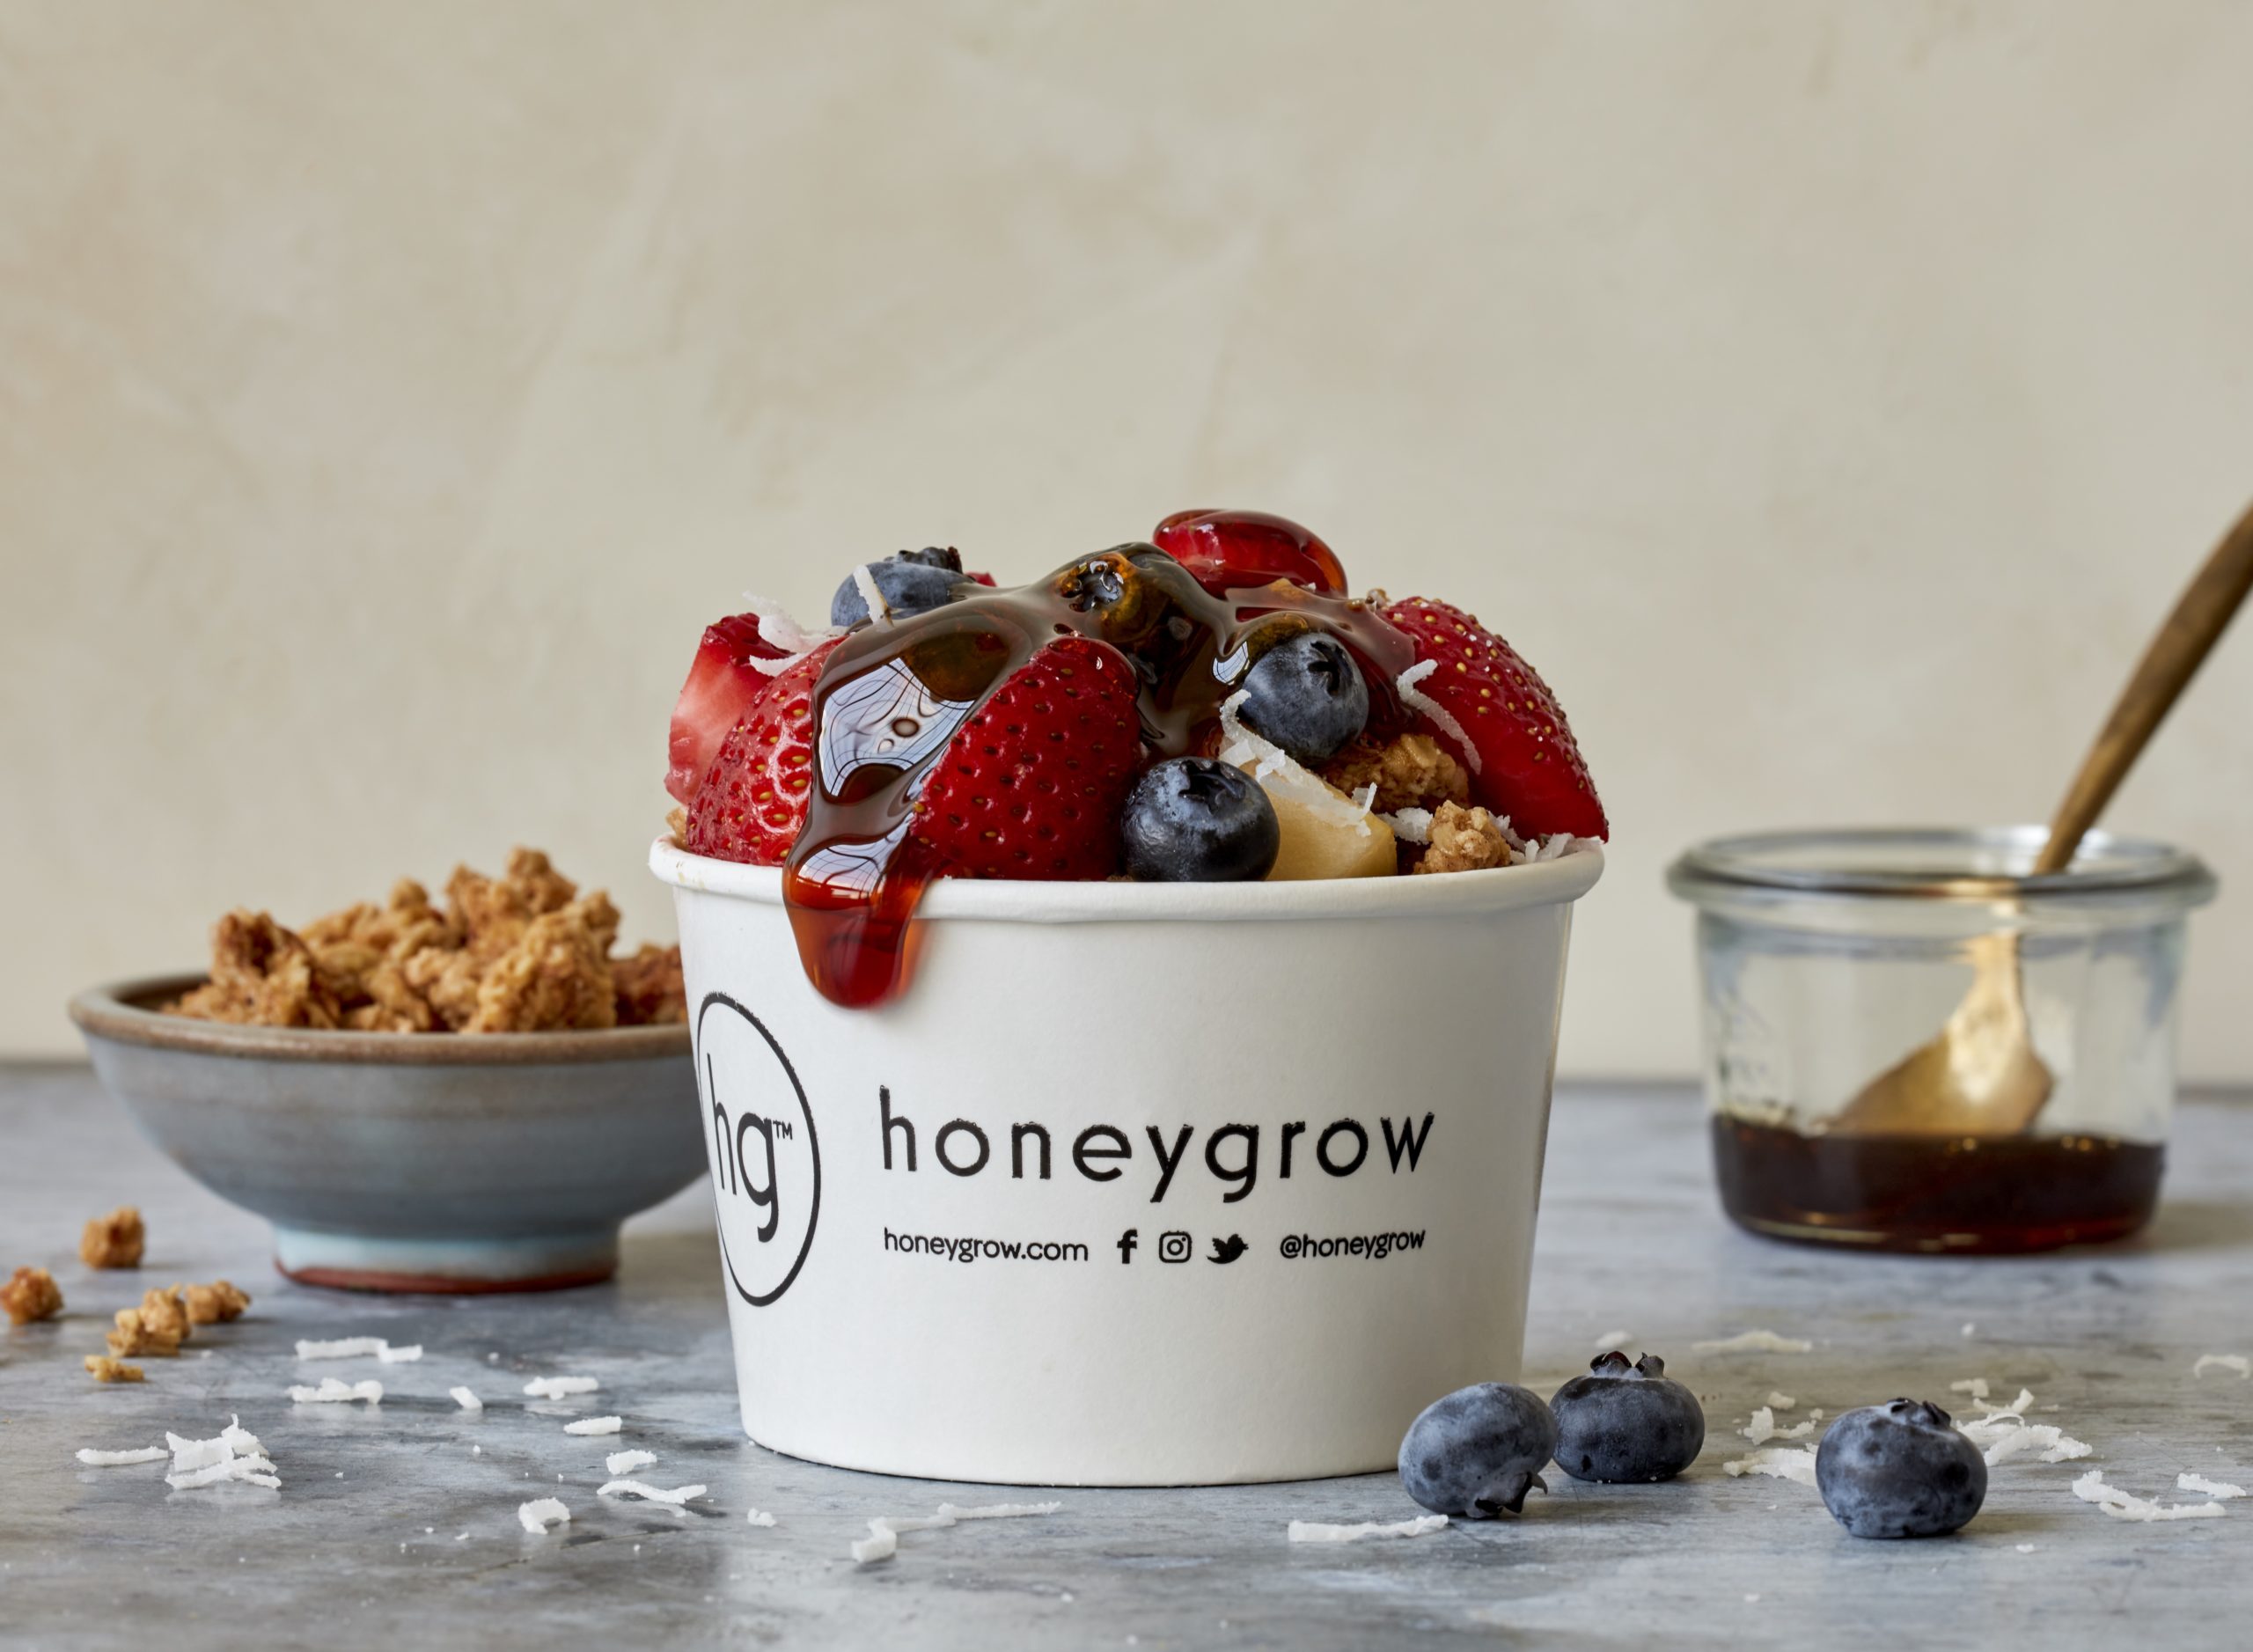 Honeybar frutas e granola disponíveis em um fundraiser honeygrow